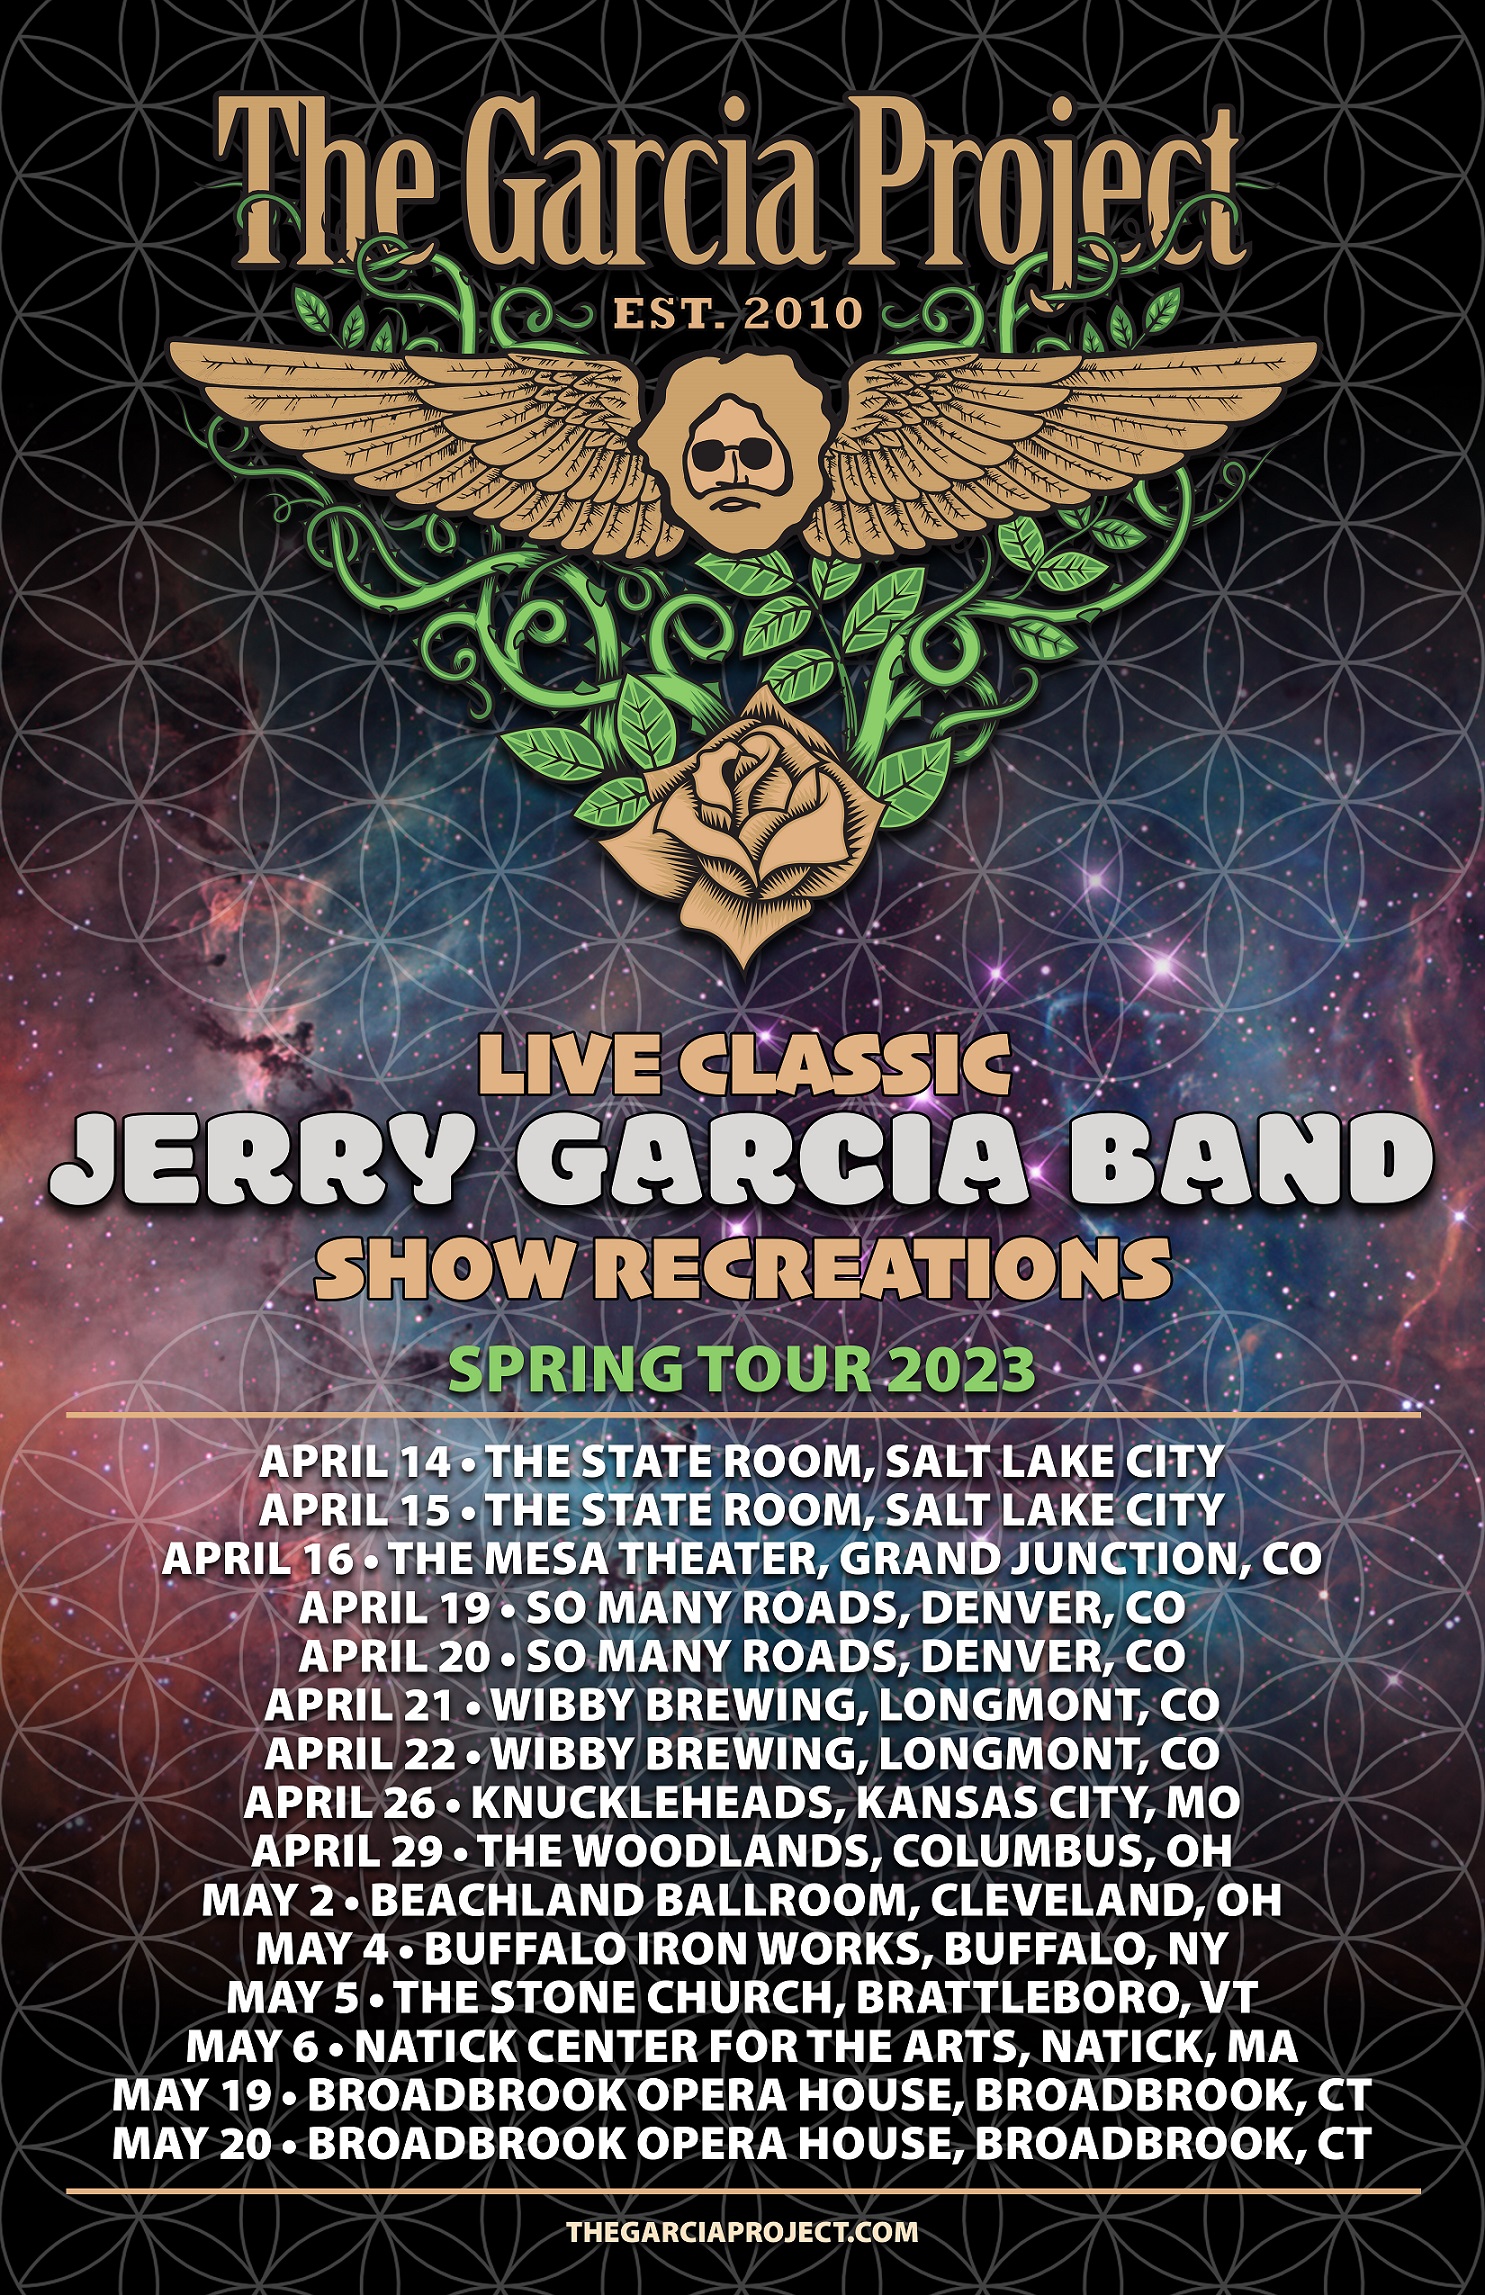 The Garcia Project announces Spring Tour 2023